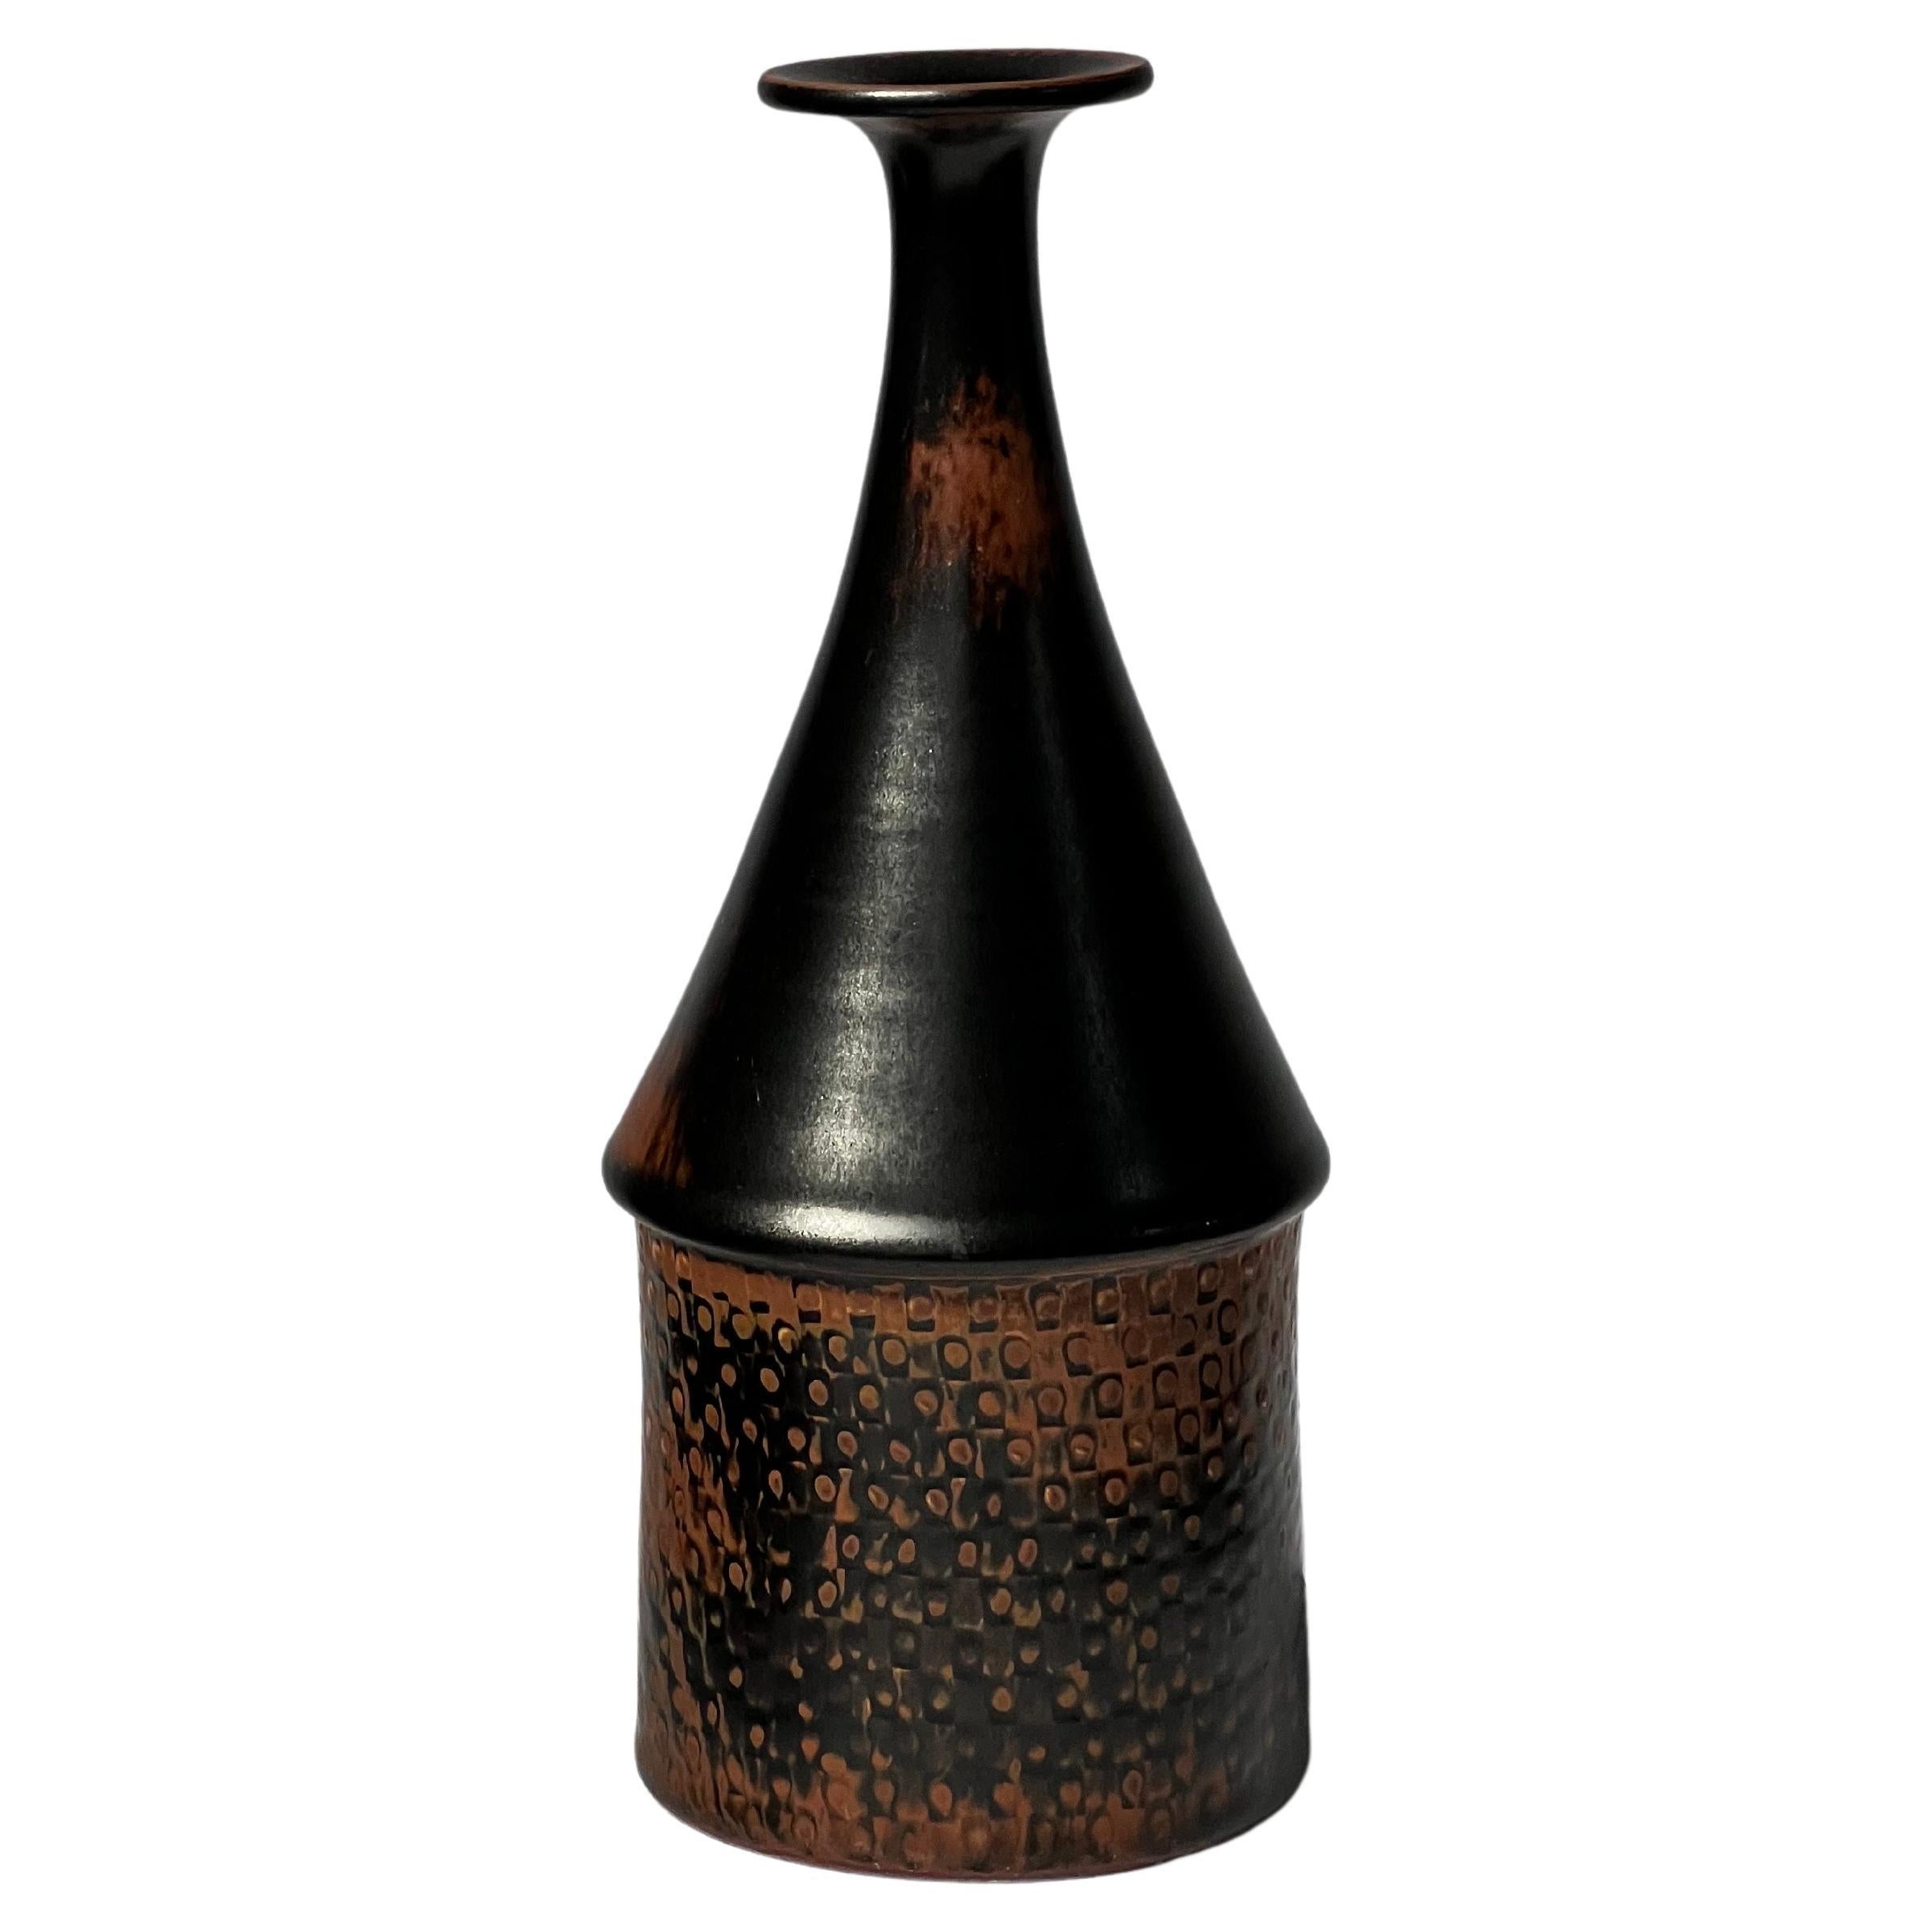 Stig Lindberg Unique Vase in black Glaze Tenmoku Made by Hand Sweden 1969